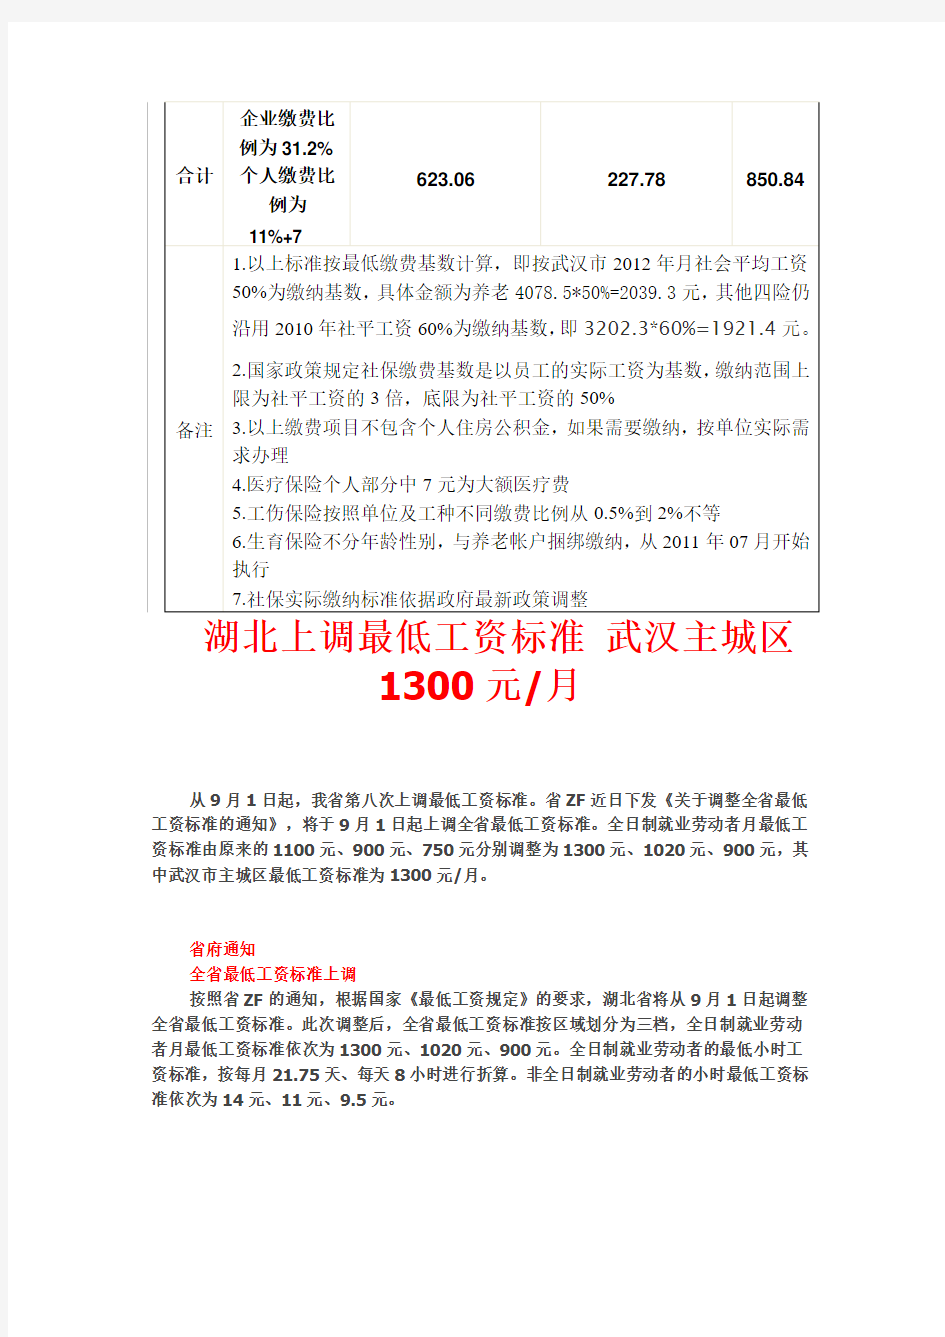 武汉中心城区社会保险缴纳新标准